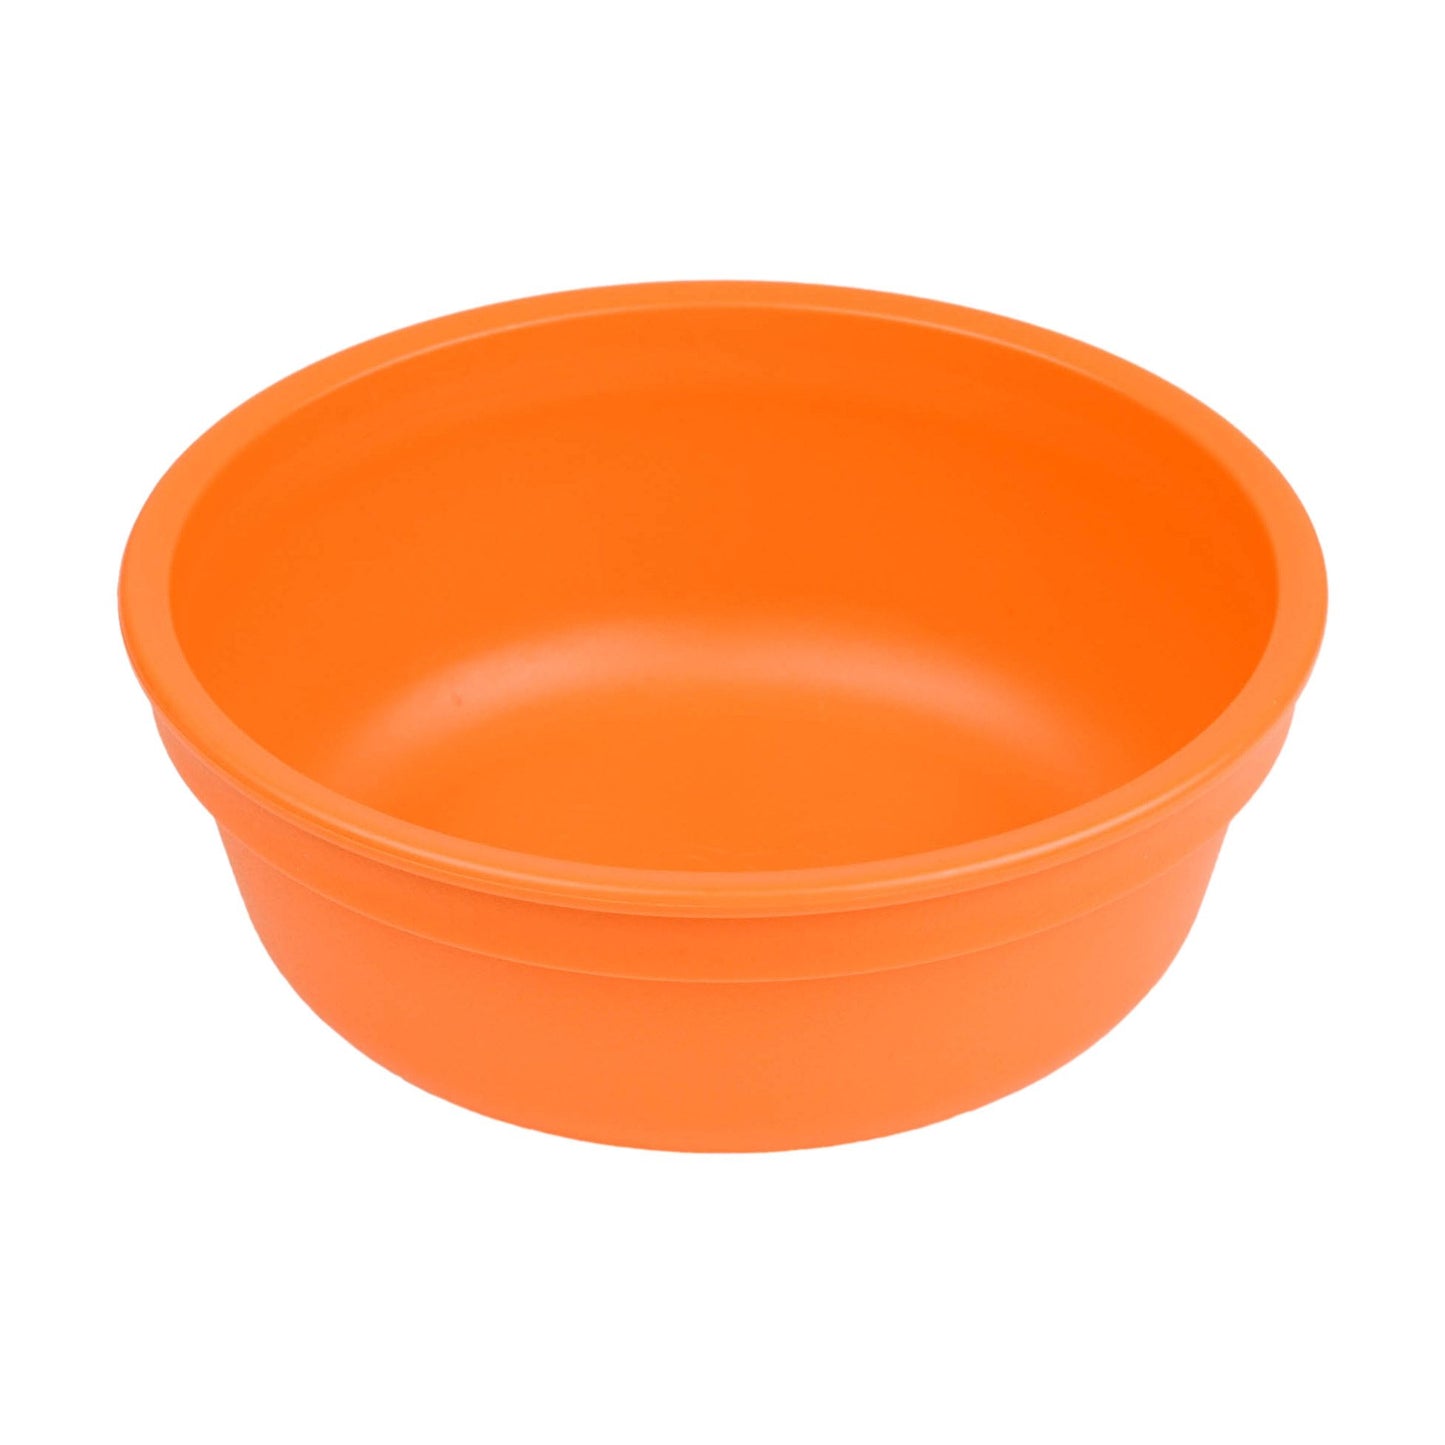 Replay Bowl - Orange